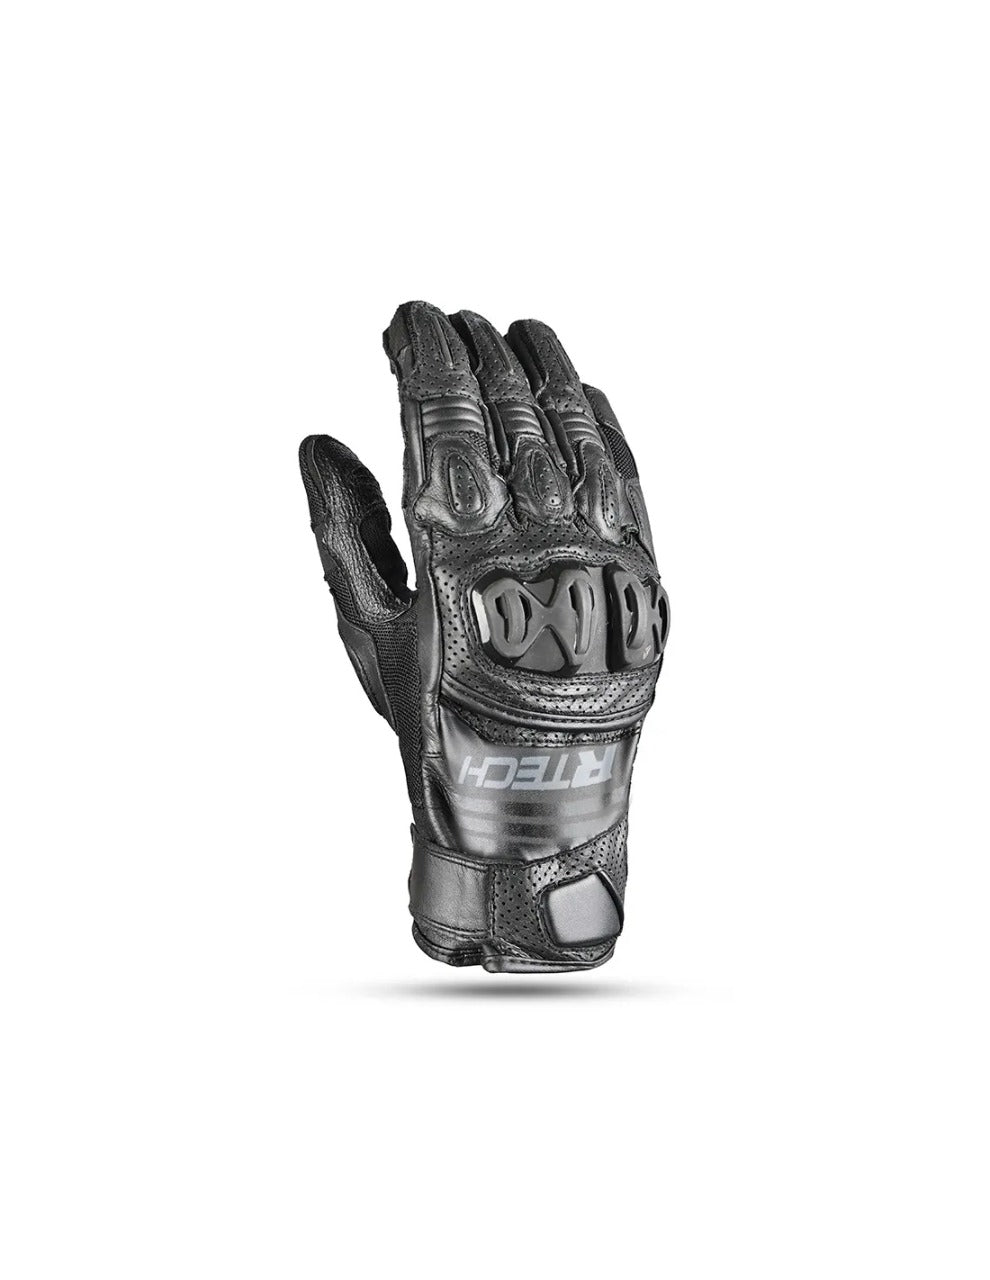 R-TECH Rocco Racing Gloves - BLACK MaximomotoUK